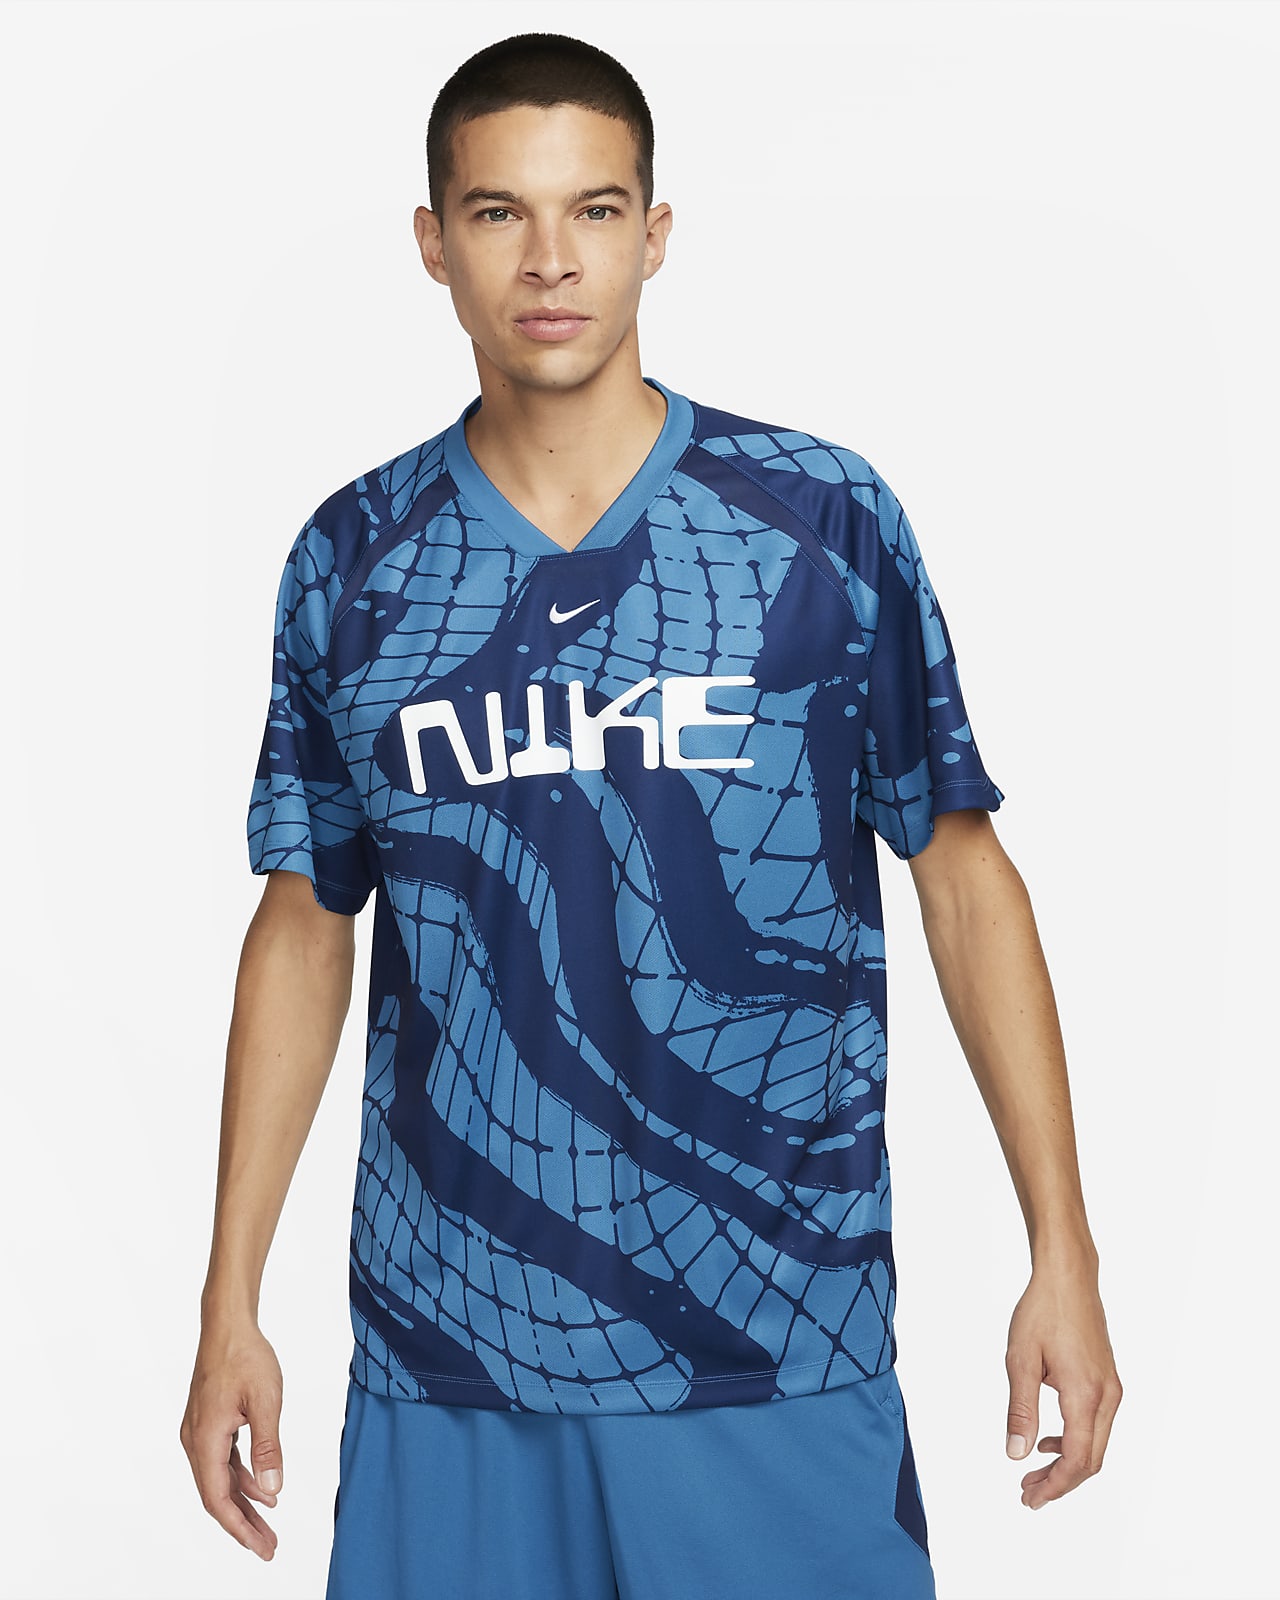 Nike Dri-FIT Men's Soccer Jersey